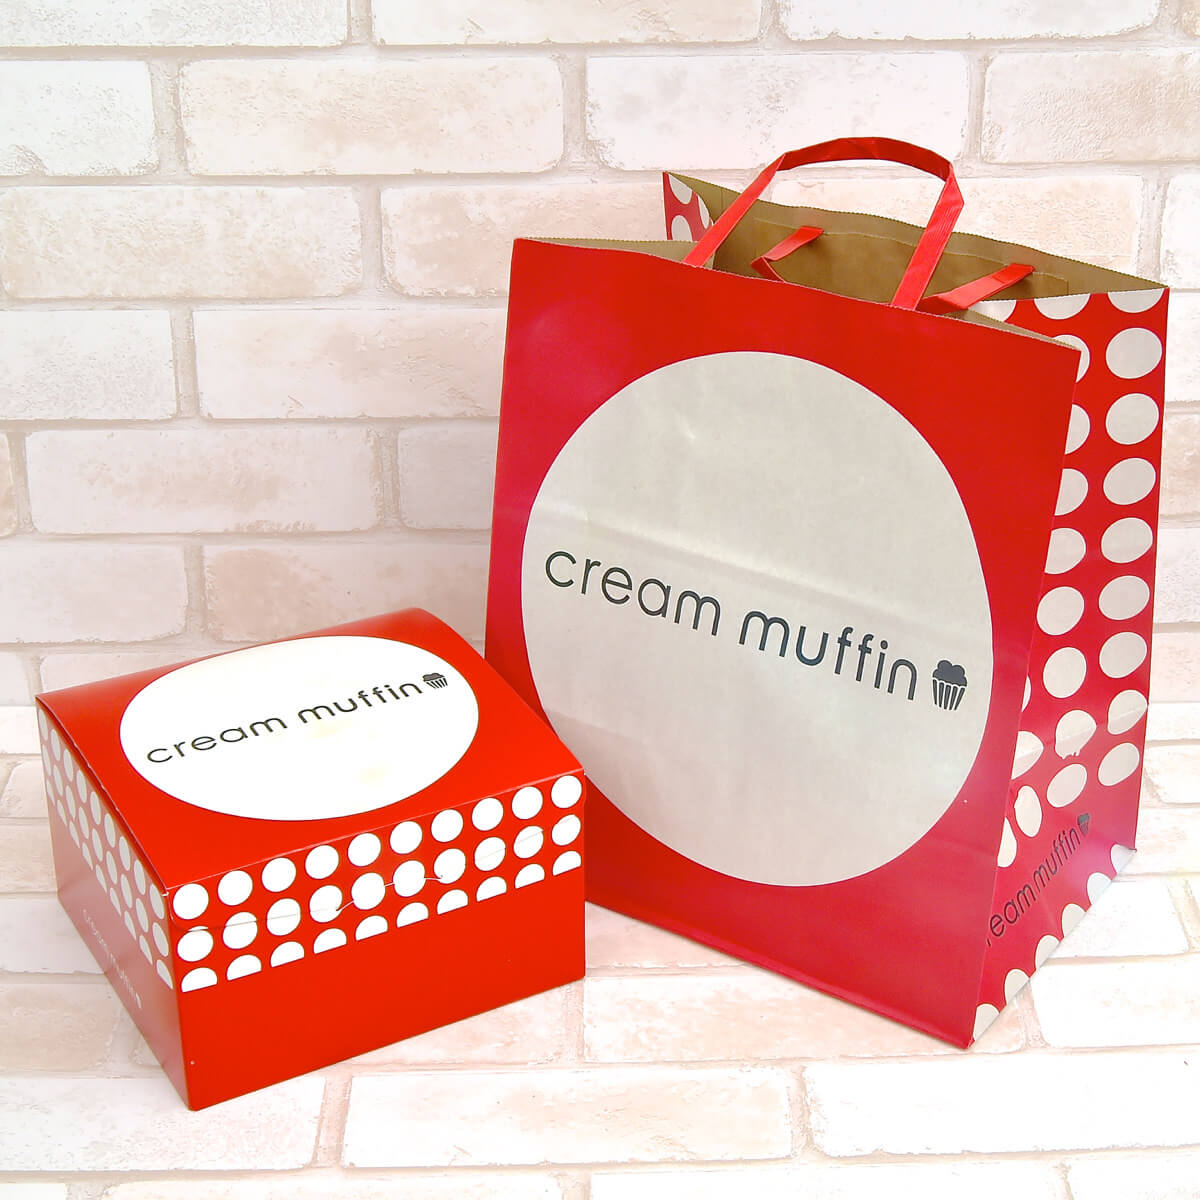 cream muffin Singapore（クリーム マフィン シンガポール）パッケージ